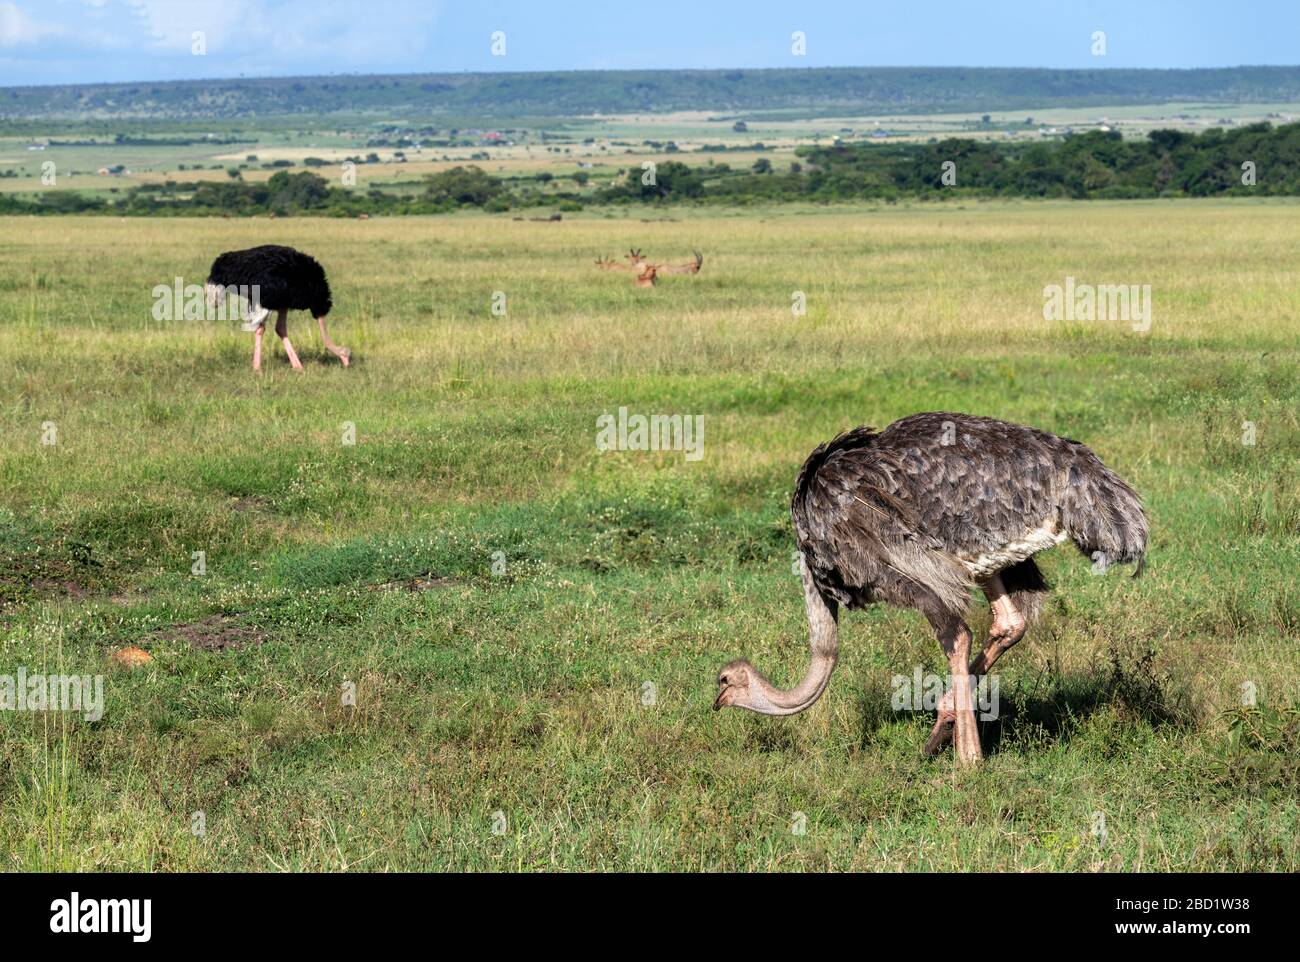 Gemeiner Ostrich (Struthio camelus). Weiblicher Strauß mit einem Männchen im Hintergrund, Masai Mara National Reserve, Kenia, Ostafrika Stockfoto